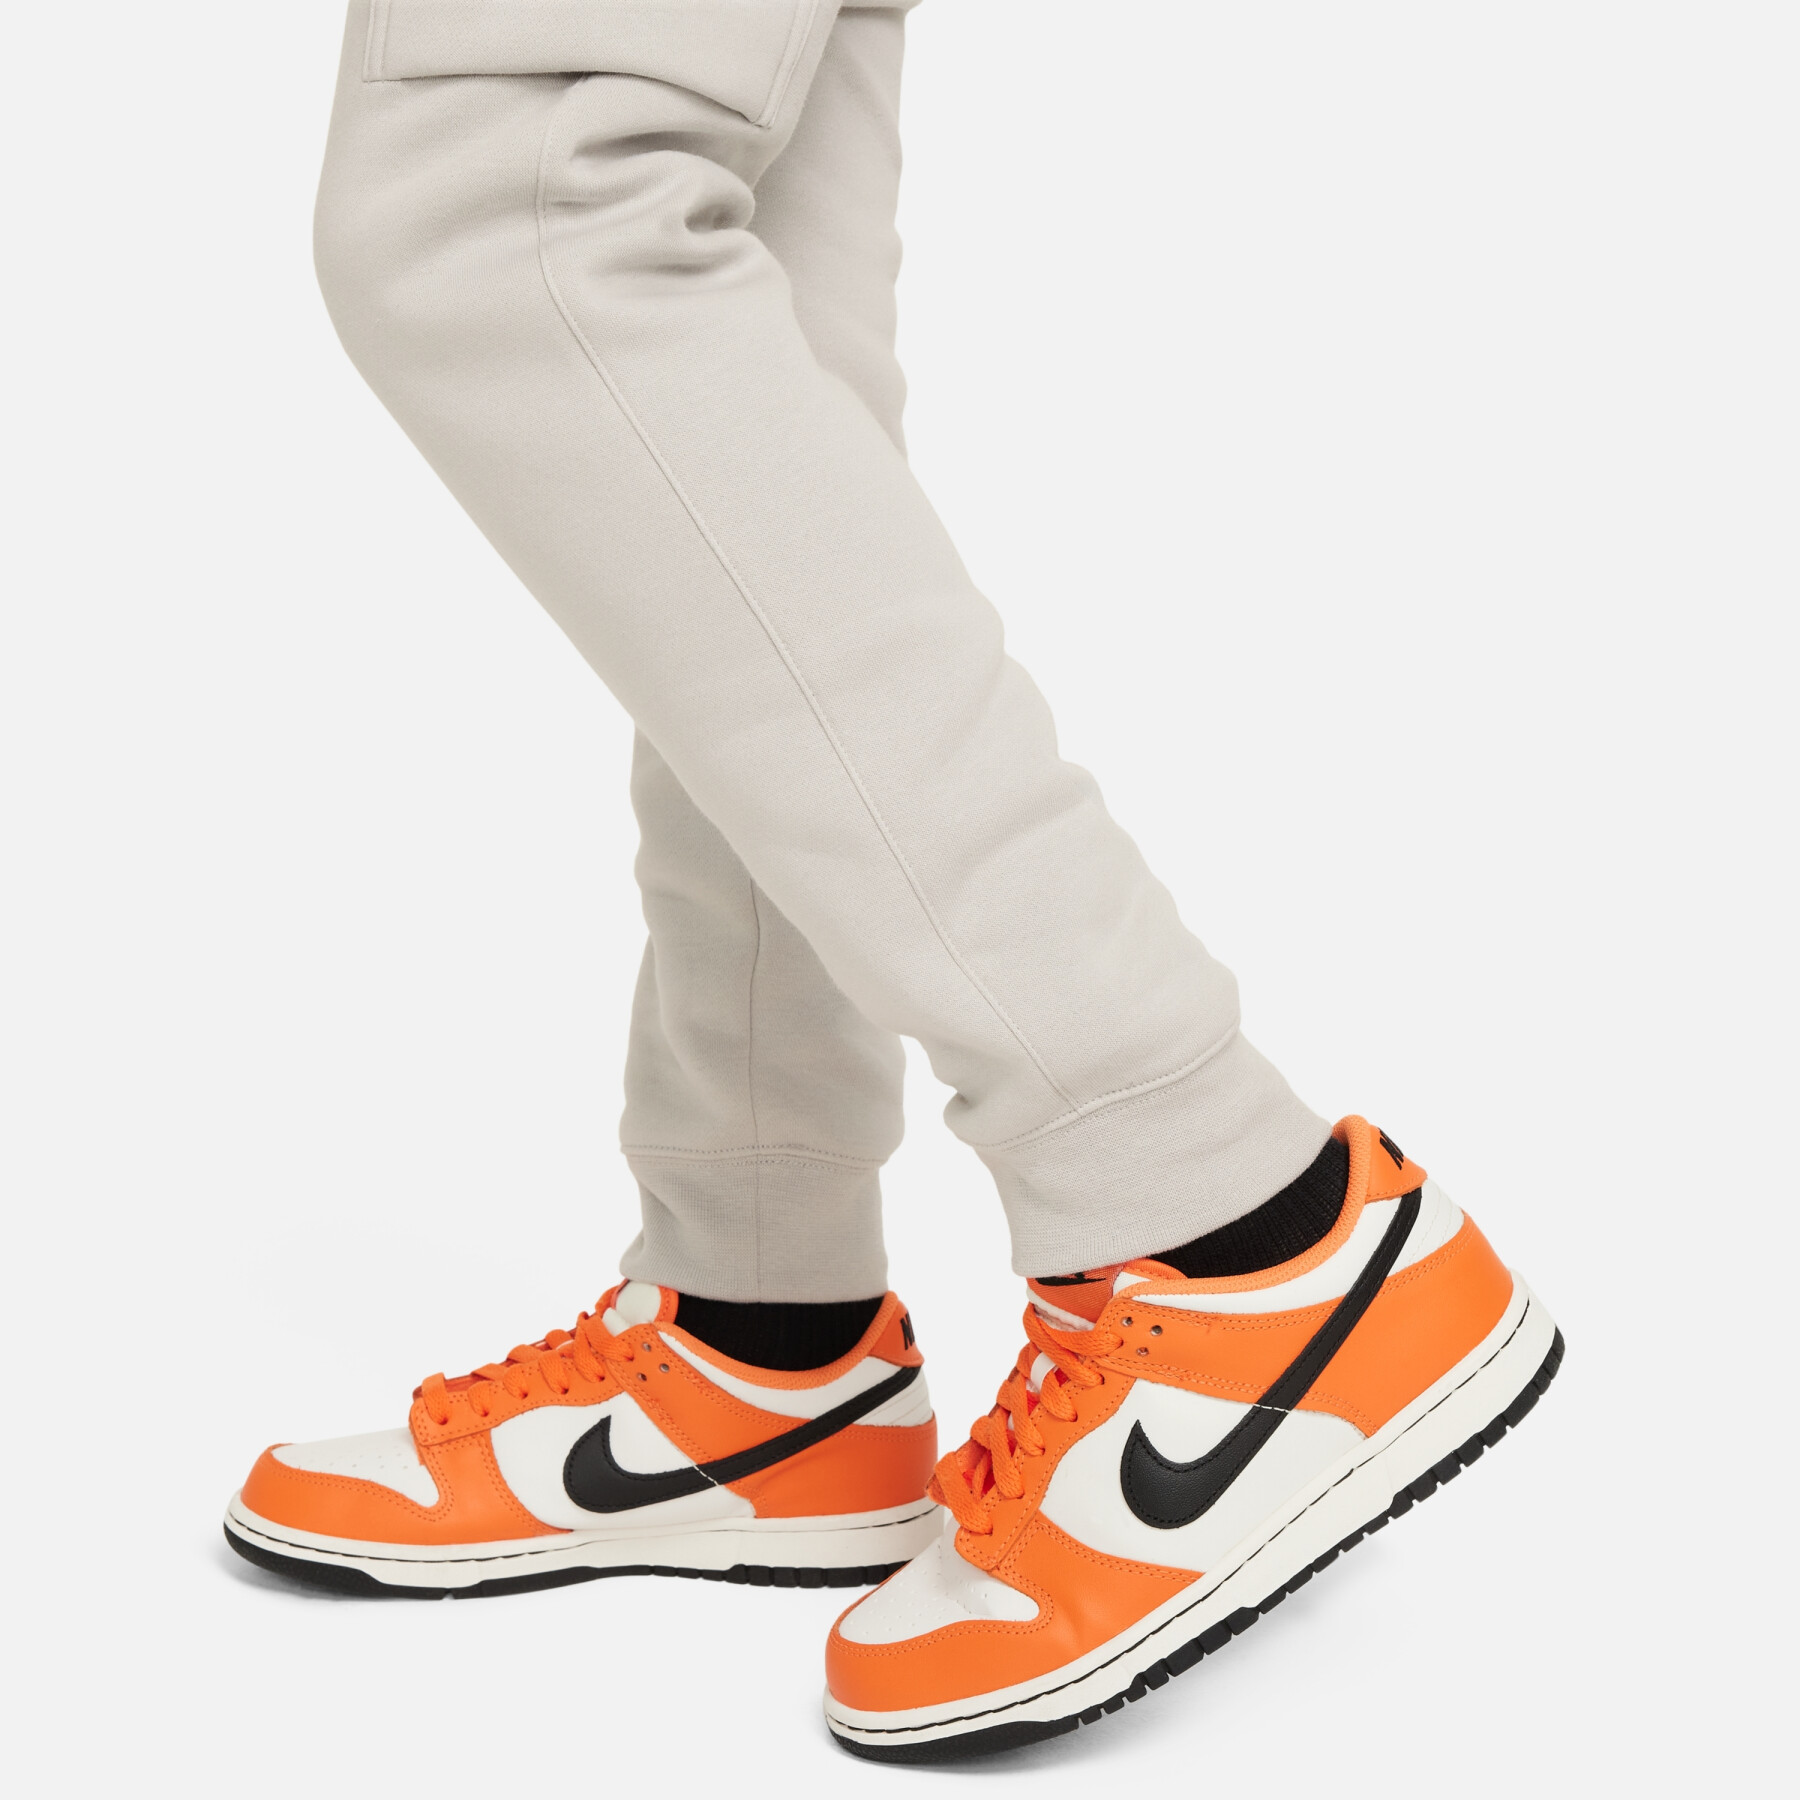 Children's cargo pants Nike Fleece